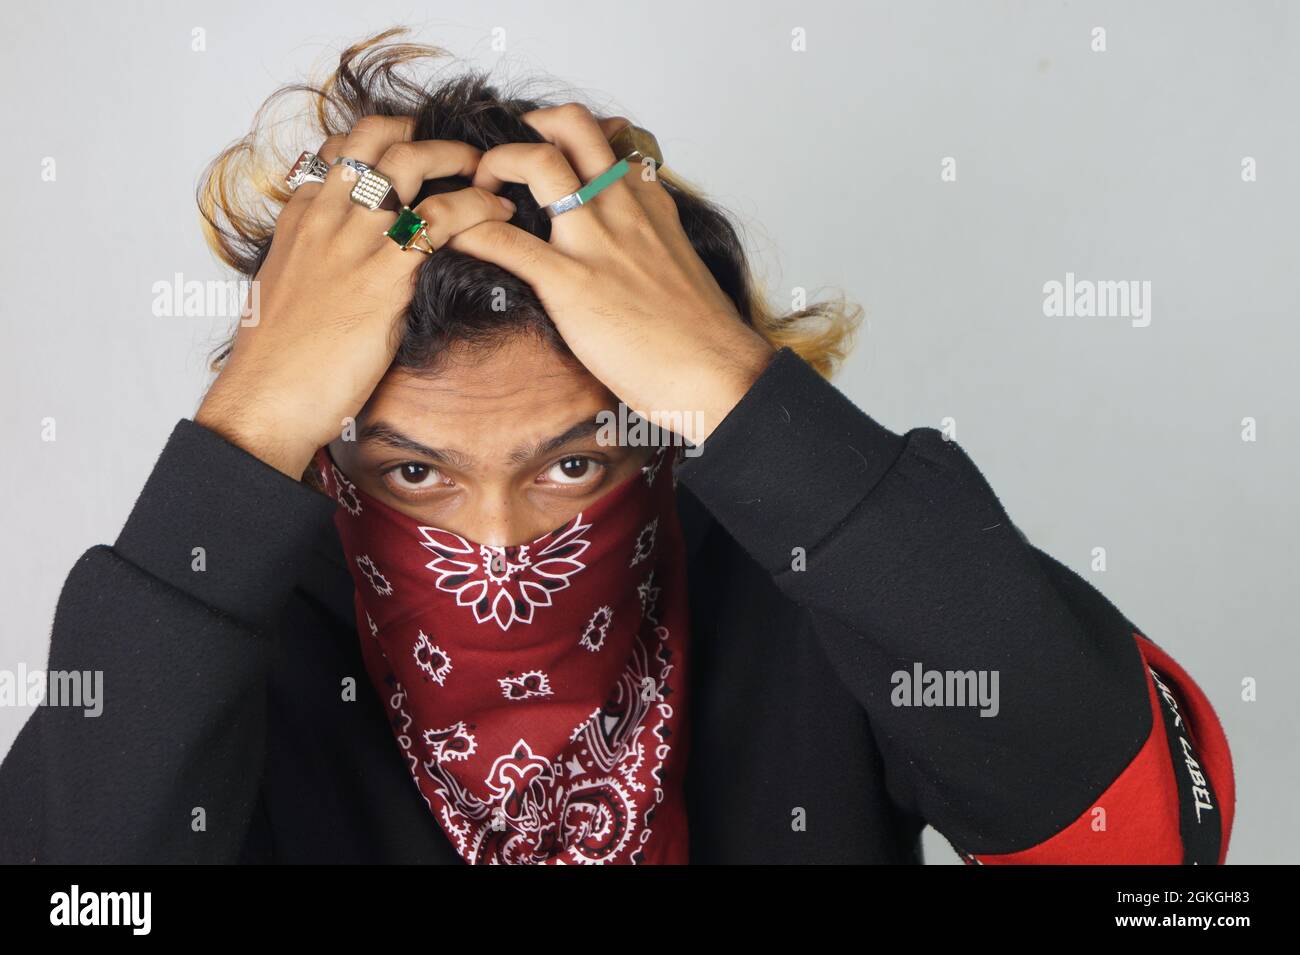 Ein junger Mann mit einem Bandana, der sein Gesicht bedeckt und Ringe an  seinen Fingern hat Stockfotografie - Alamy